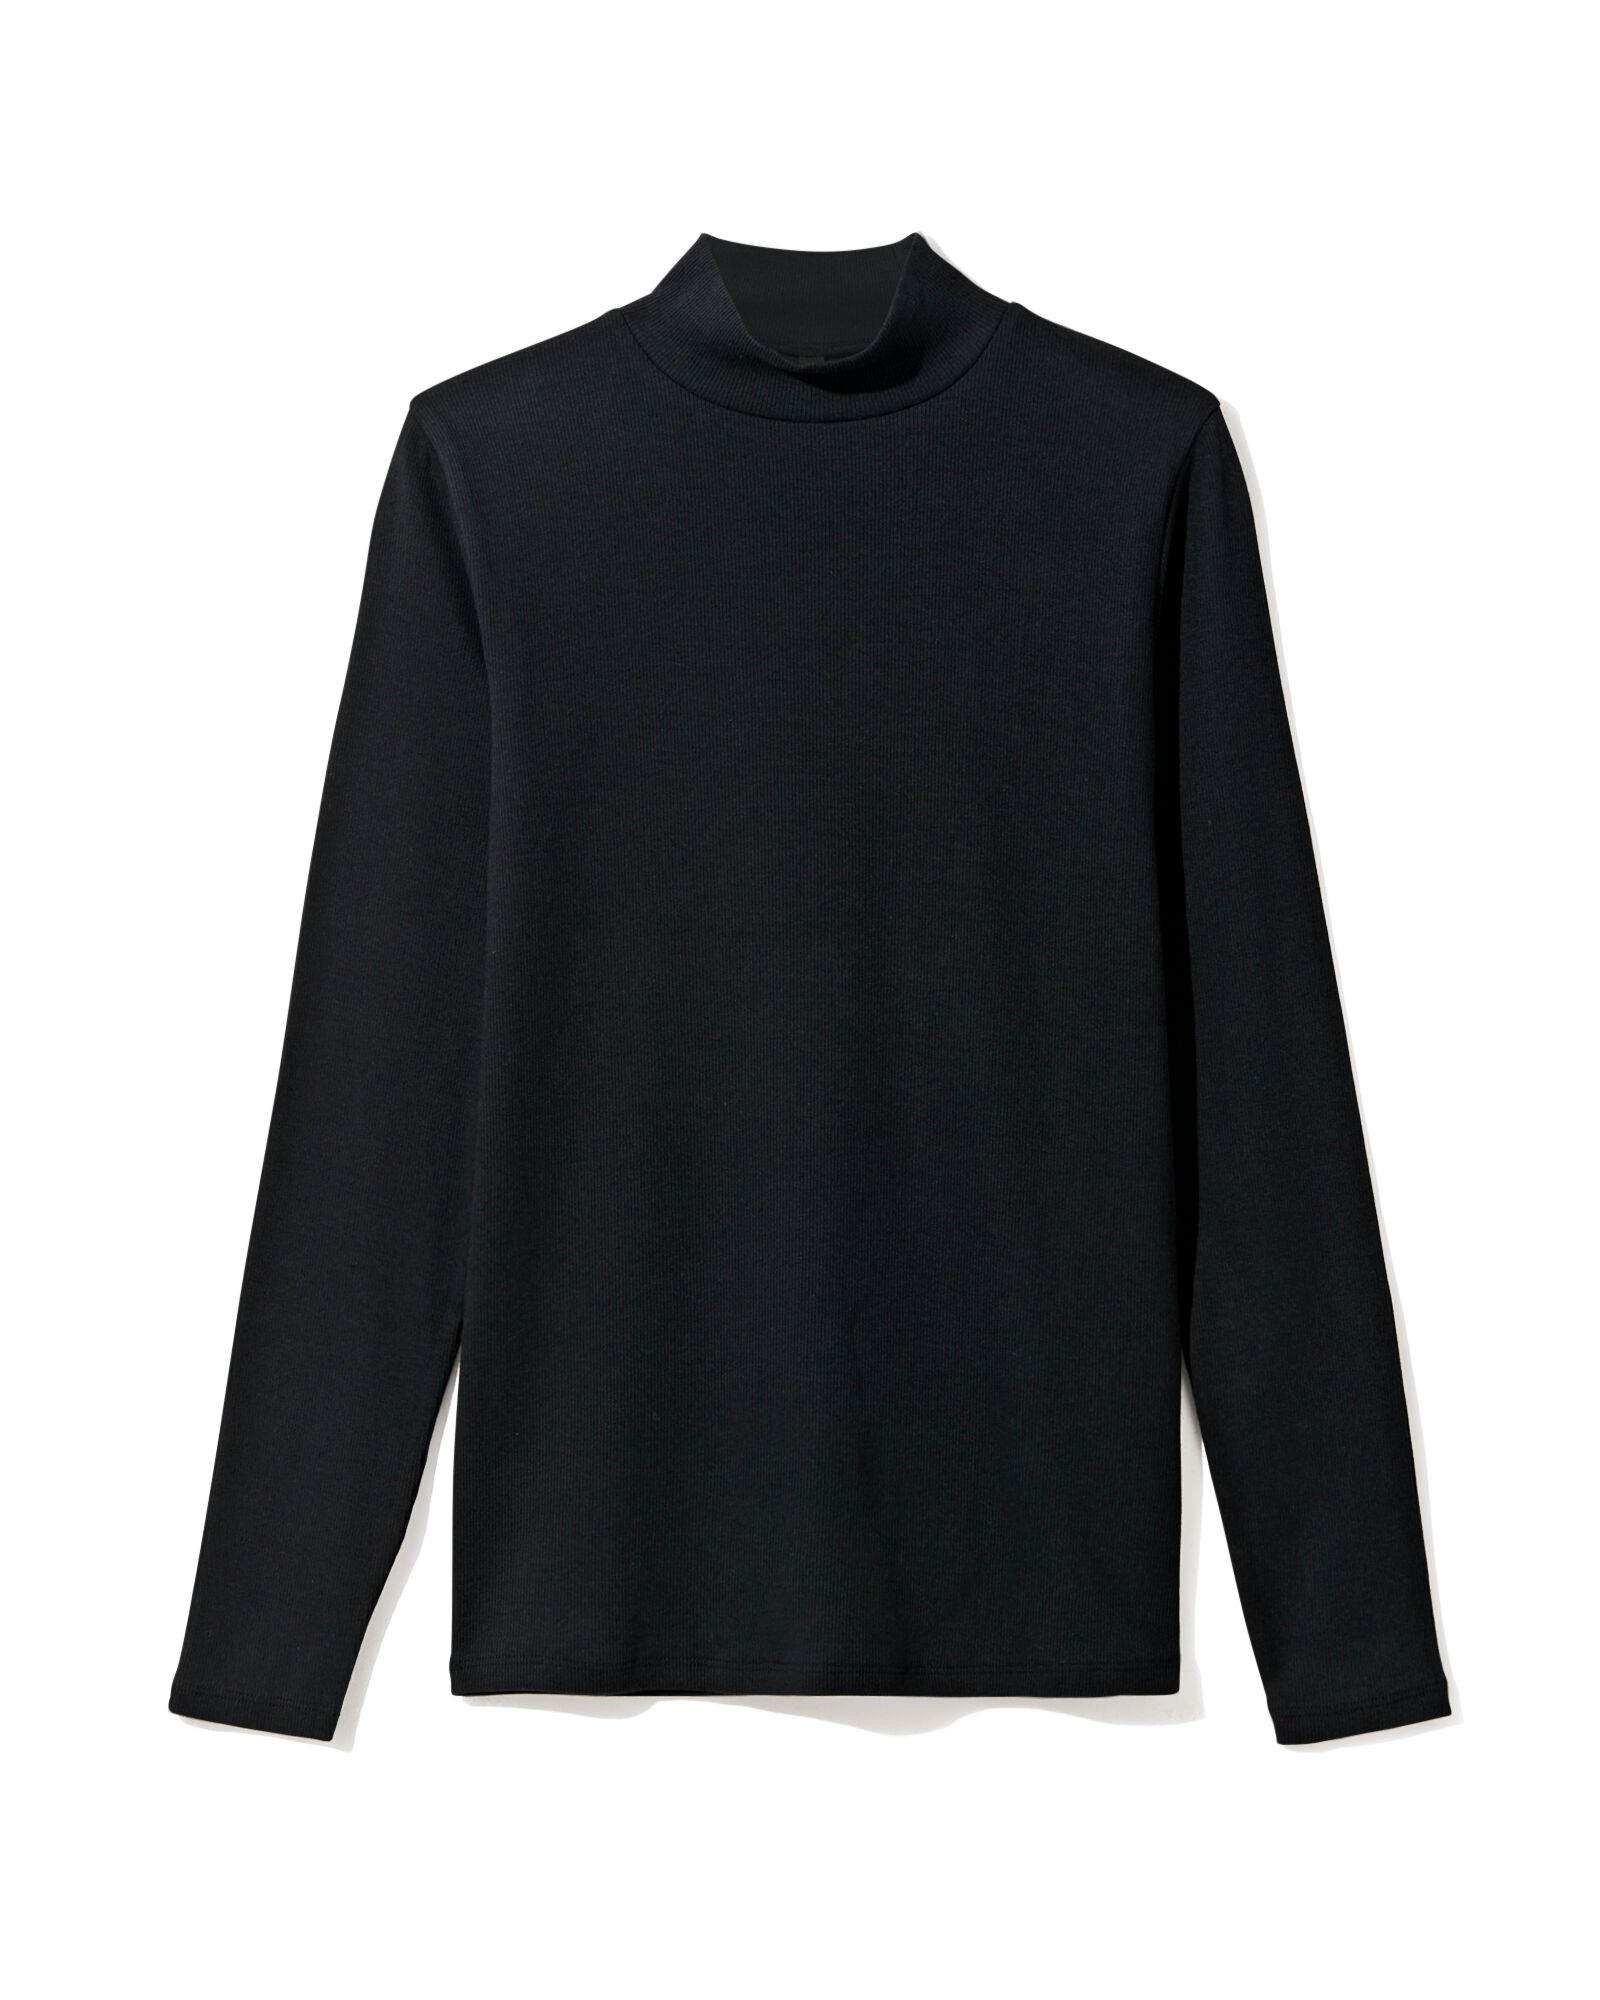 Damen-Shirt Clara, Feinripp schwarz schwarz - 36239140BLACK - HEMA